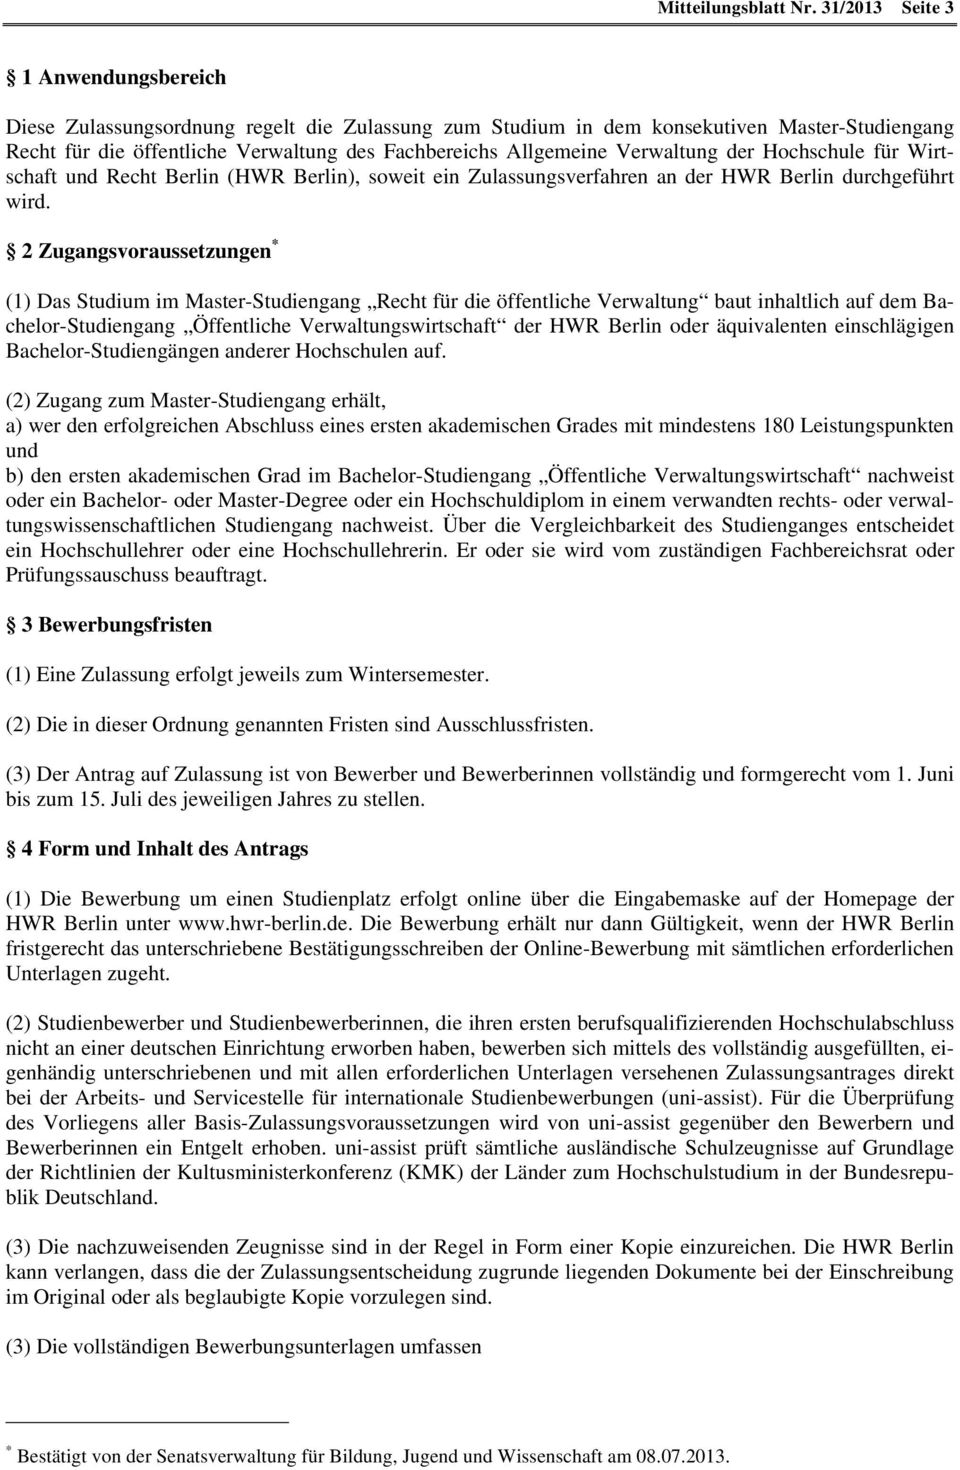 Verwaltung der Hochschule für Wirtschaft und Recht Berlin (HWR Berlin), soweit ein Zulassungsverfahren an der HWR Berlin durchgeführt wird.